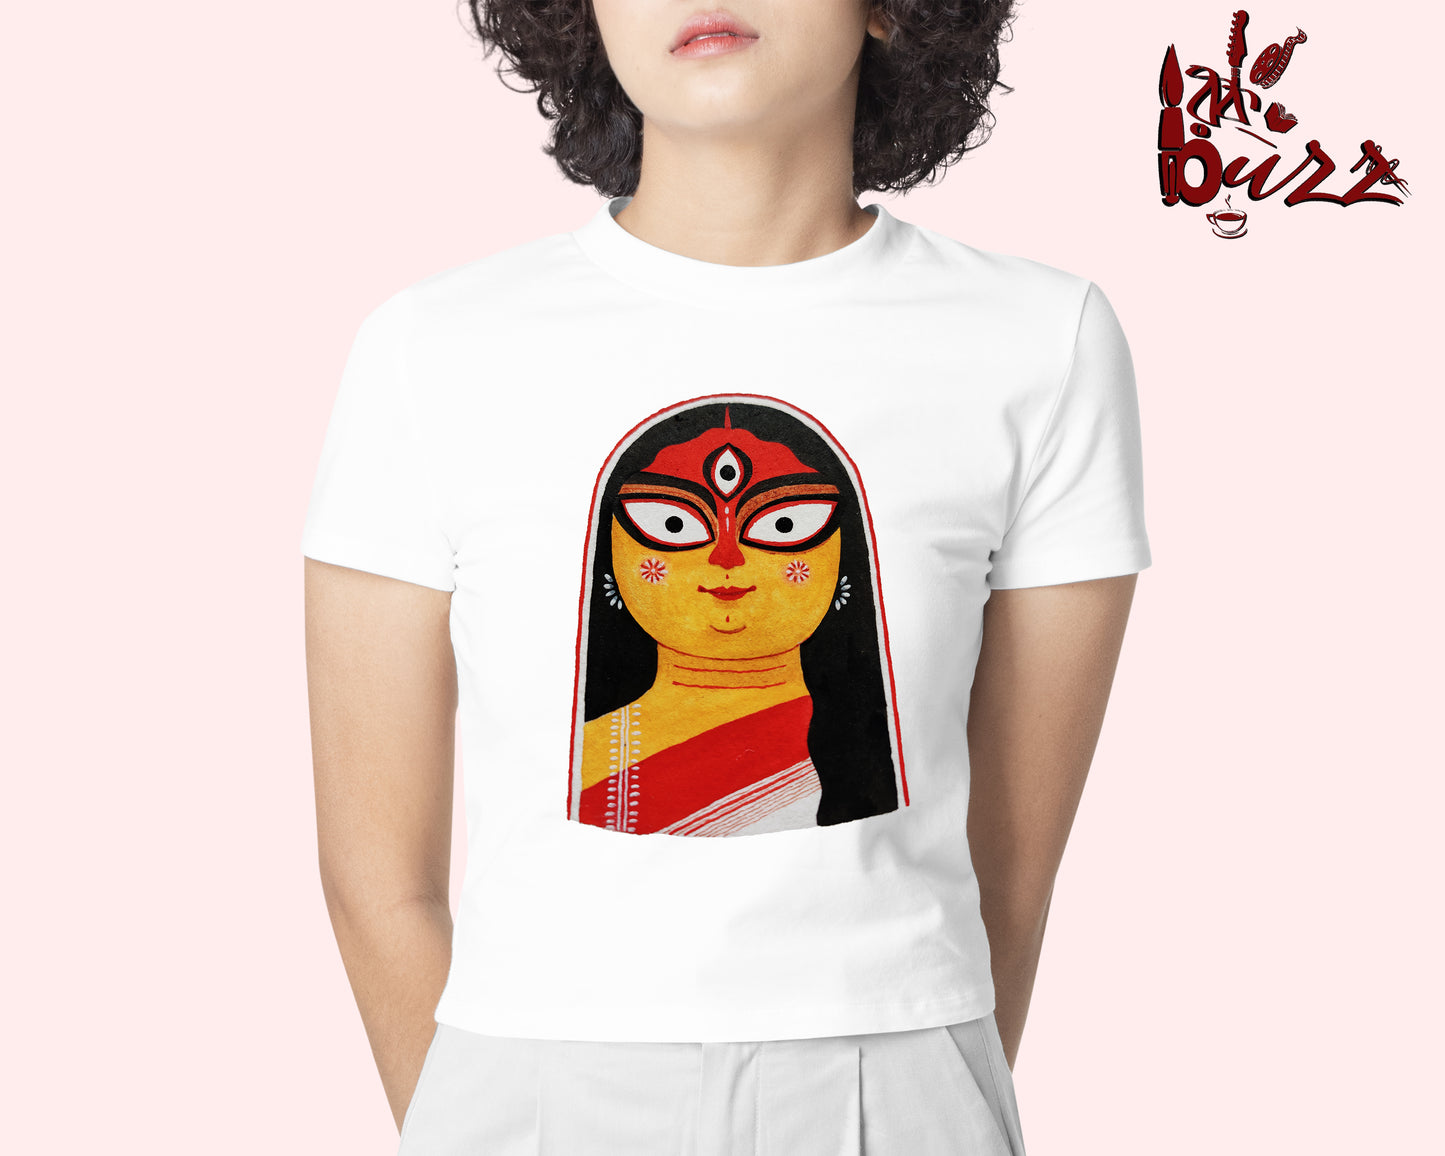 Crop top - Durga art printed Bengali women top